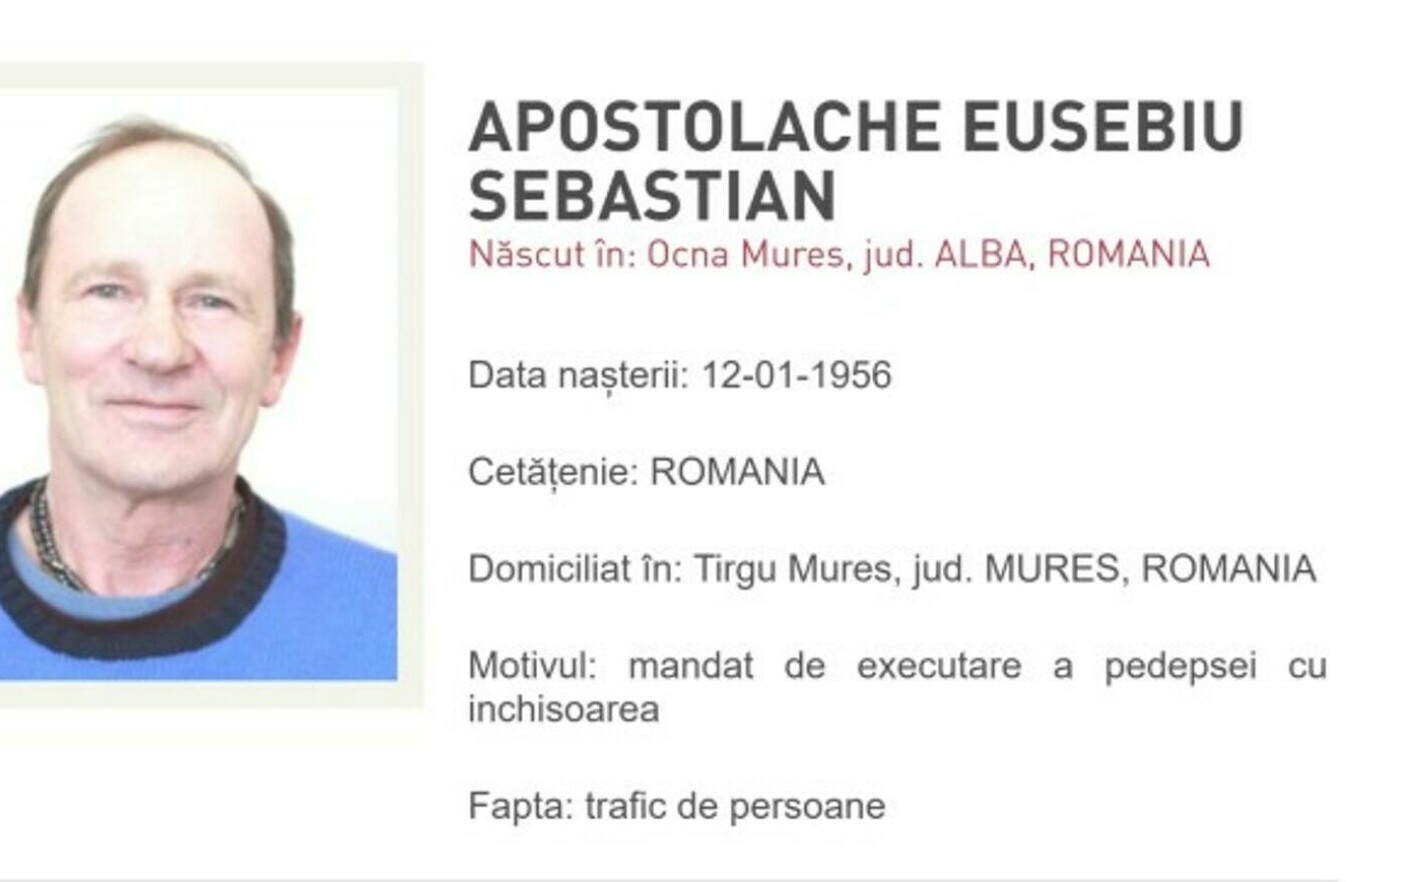 Gurul din Ocna Mureș, urmărit internațional. Eusebiu Sebastian Apostolache abuza studente și eleve în secta „Cercul”